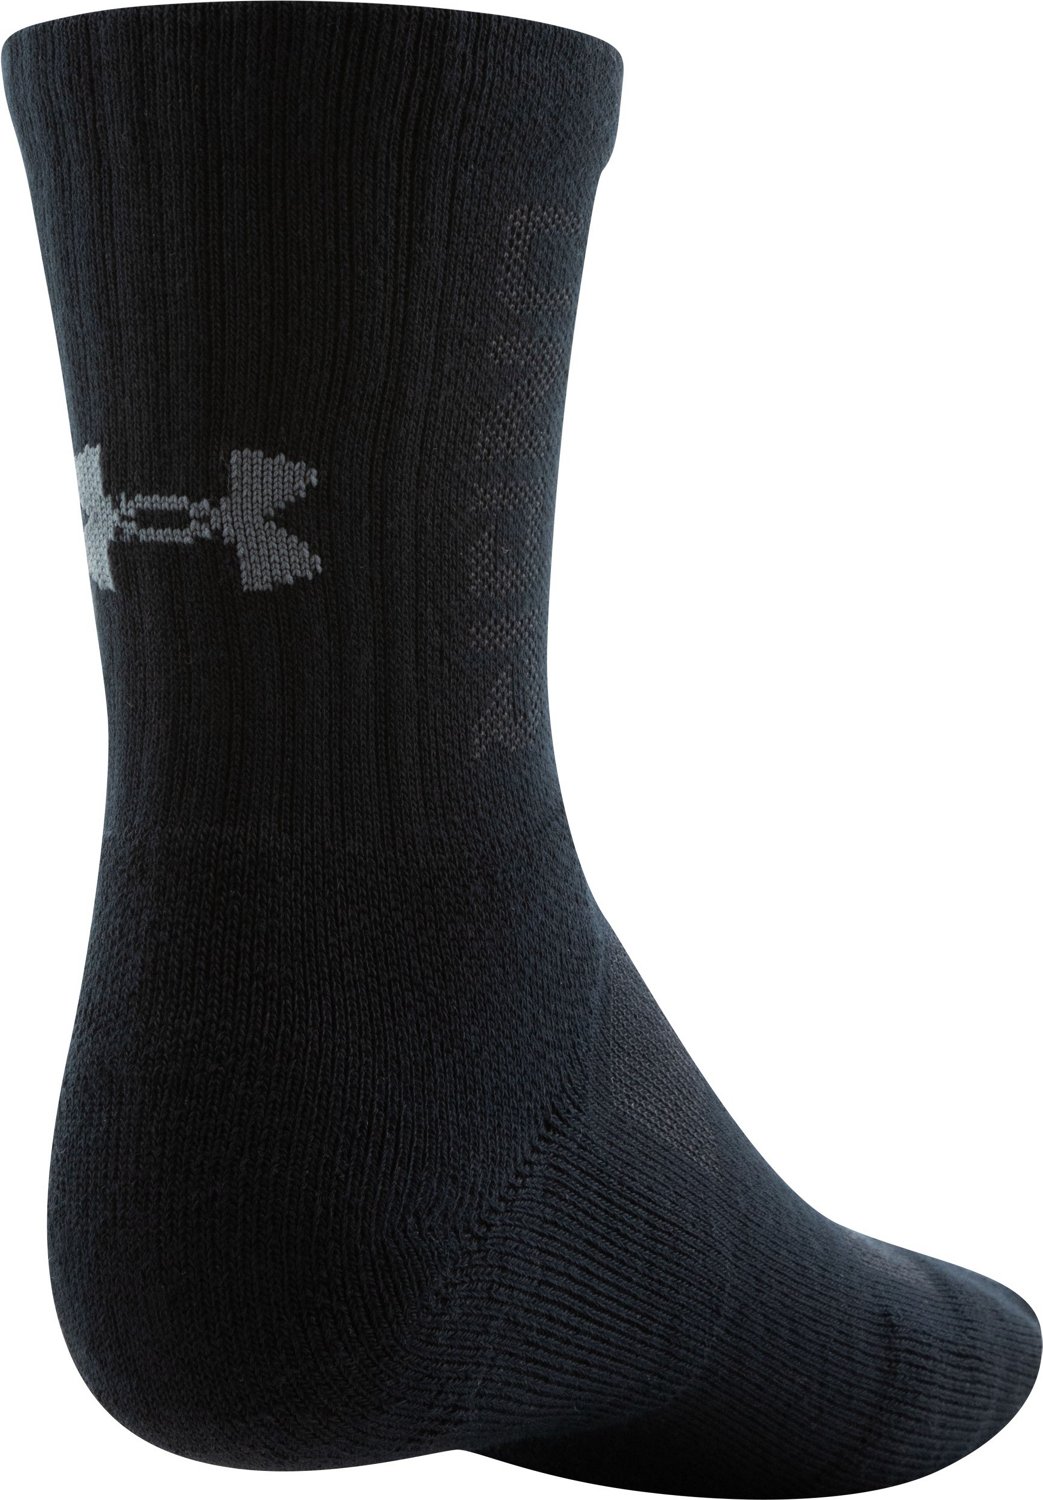 Unisex UA Performance Cotton 3-Pack Mid-Crew Socks